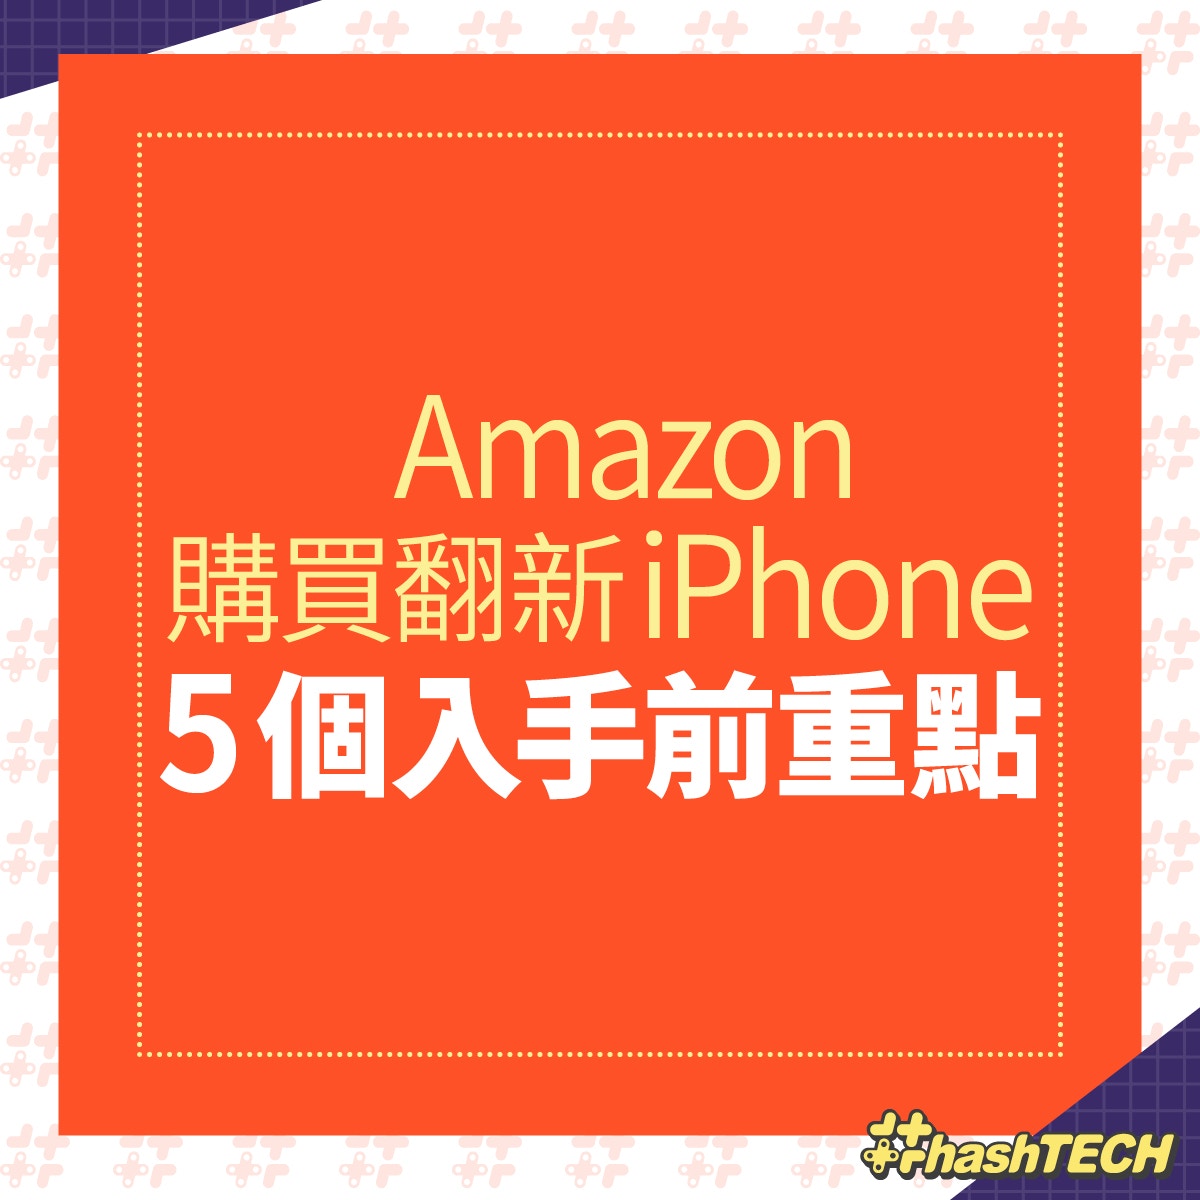 Iphone 1400買到amazon官方翻新機抵過買二手入手前5點必知 香港01 數碼生活